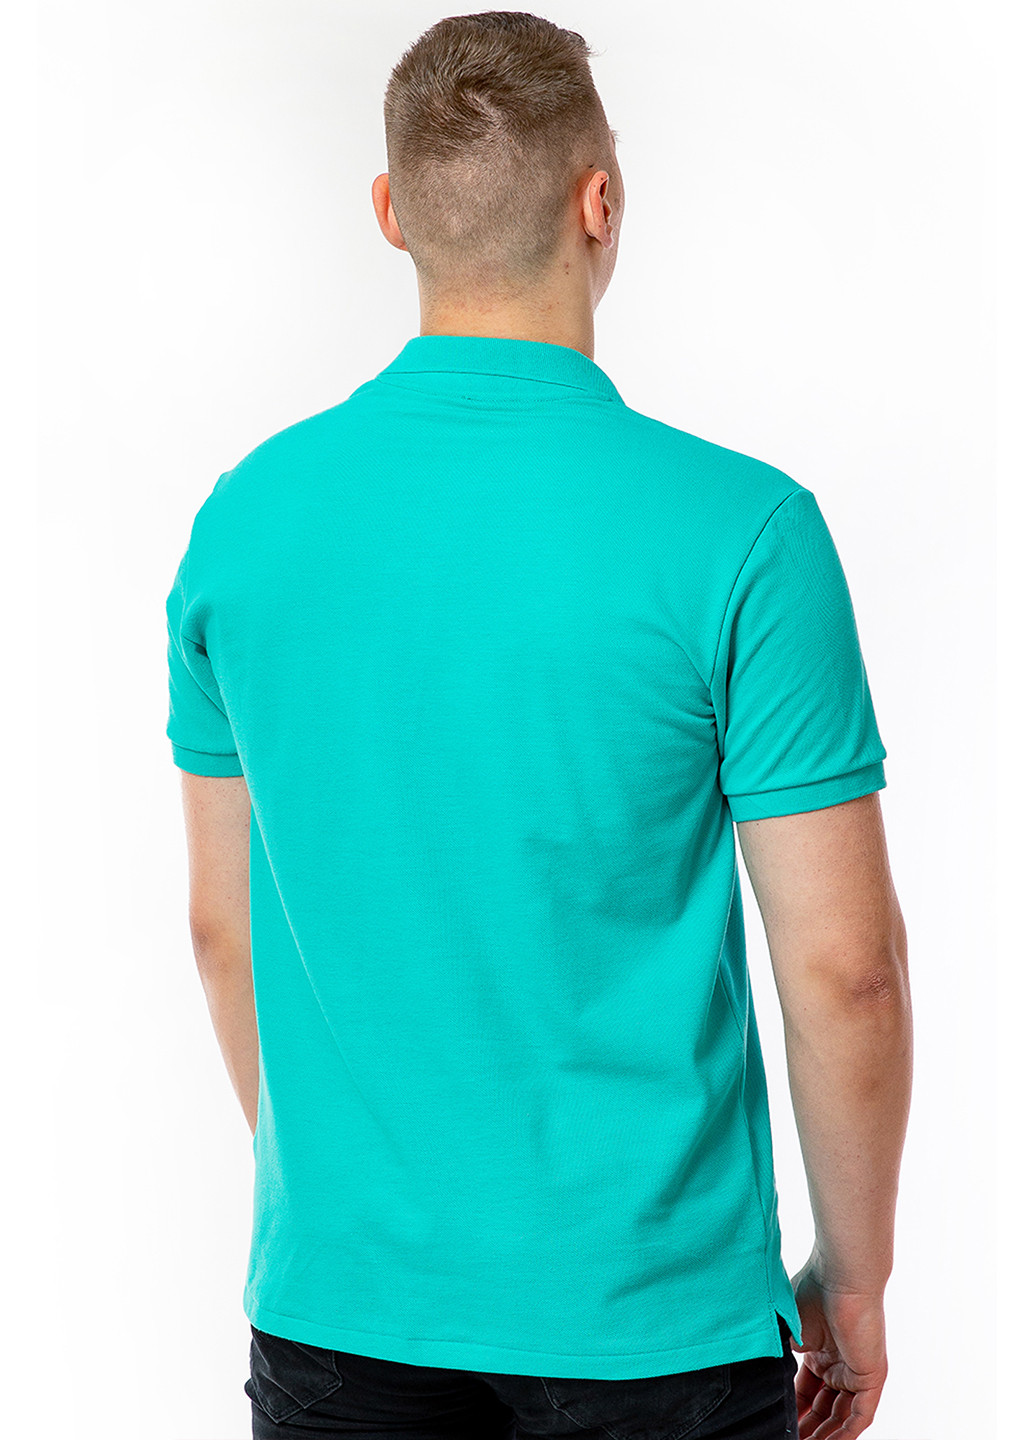 Зеленая футболка-футболка-поло мужская для мужчин Kosta однотонная